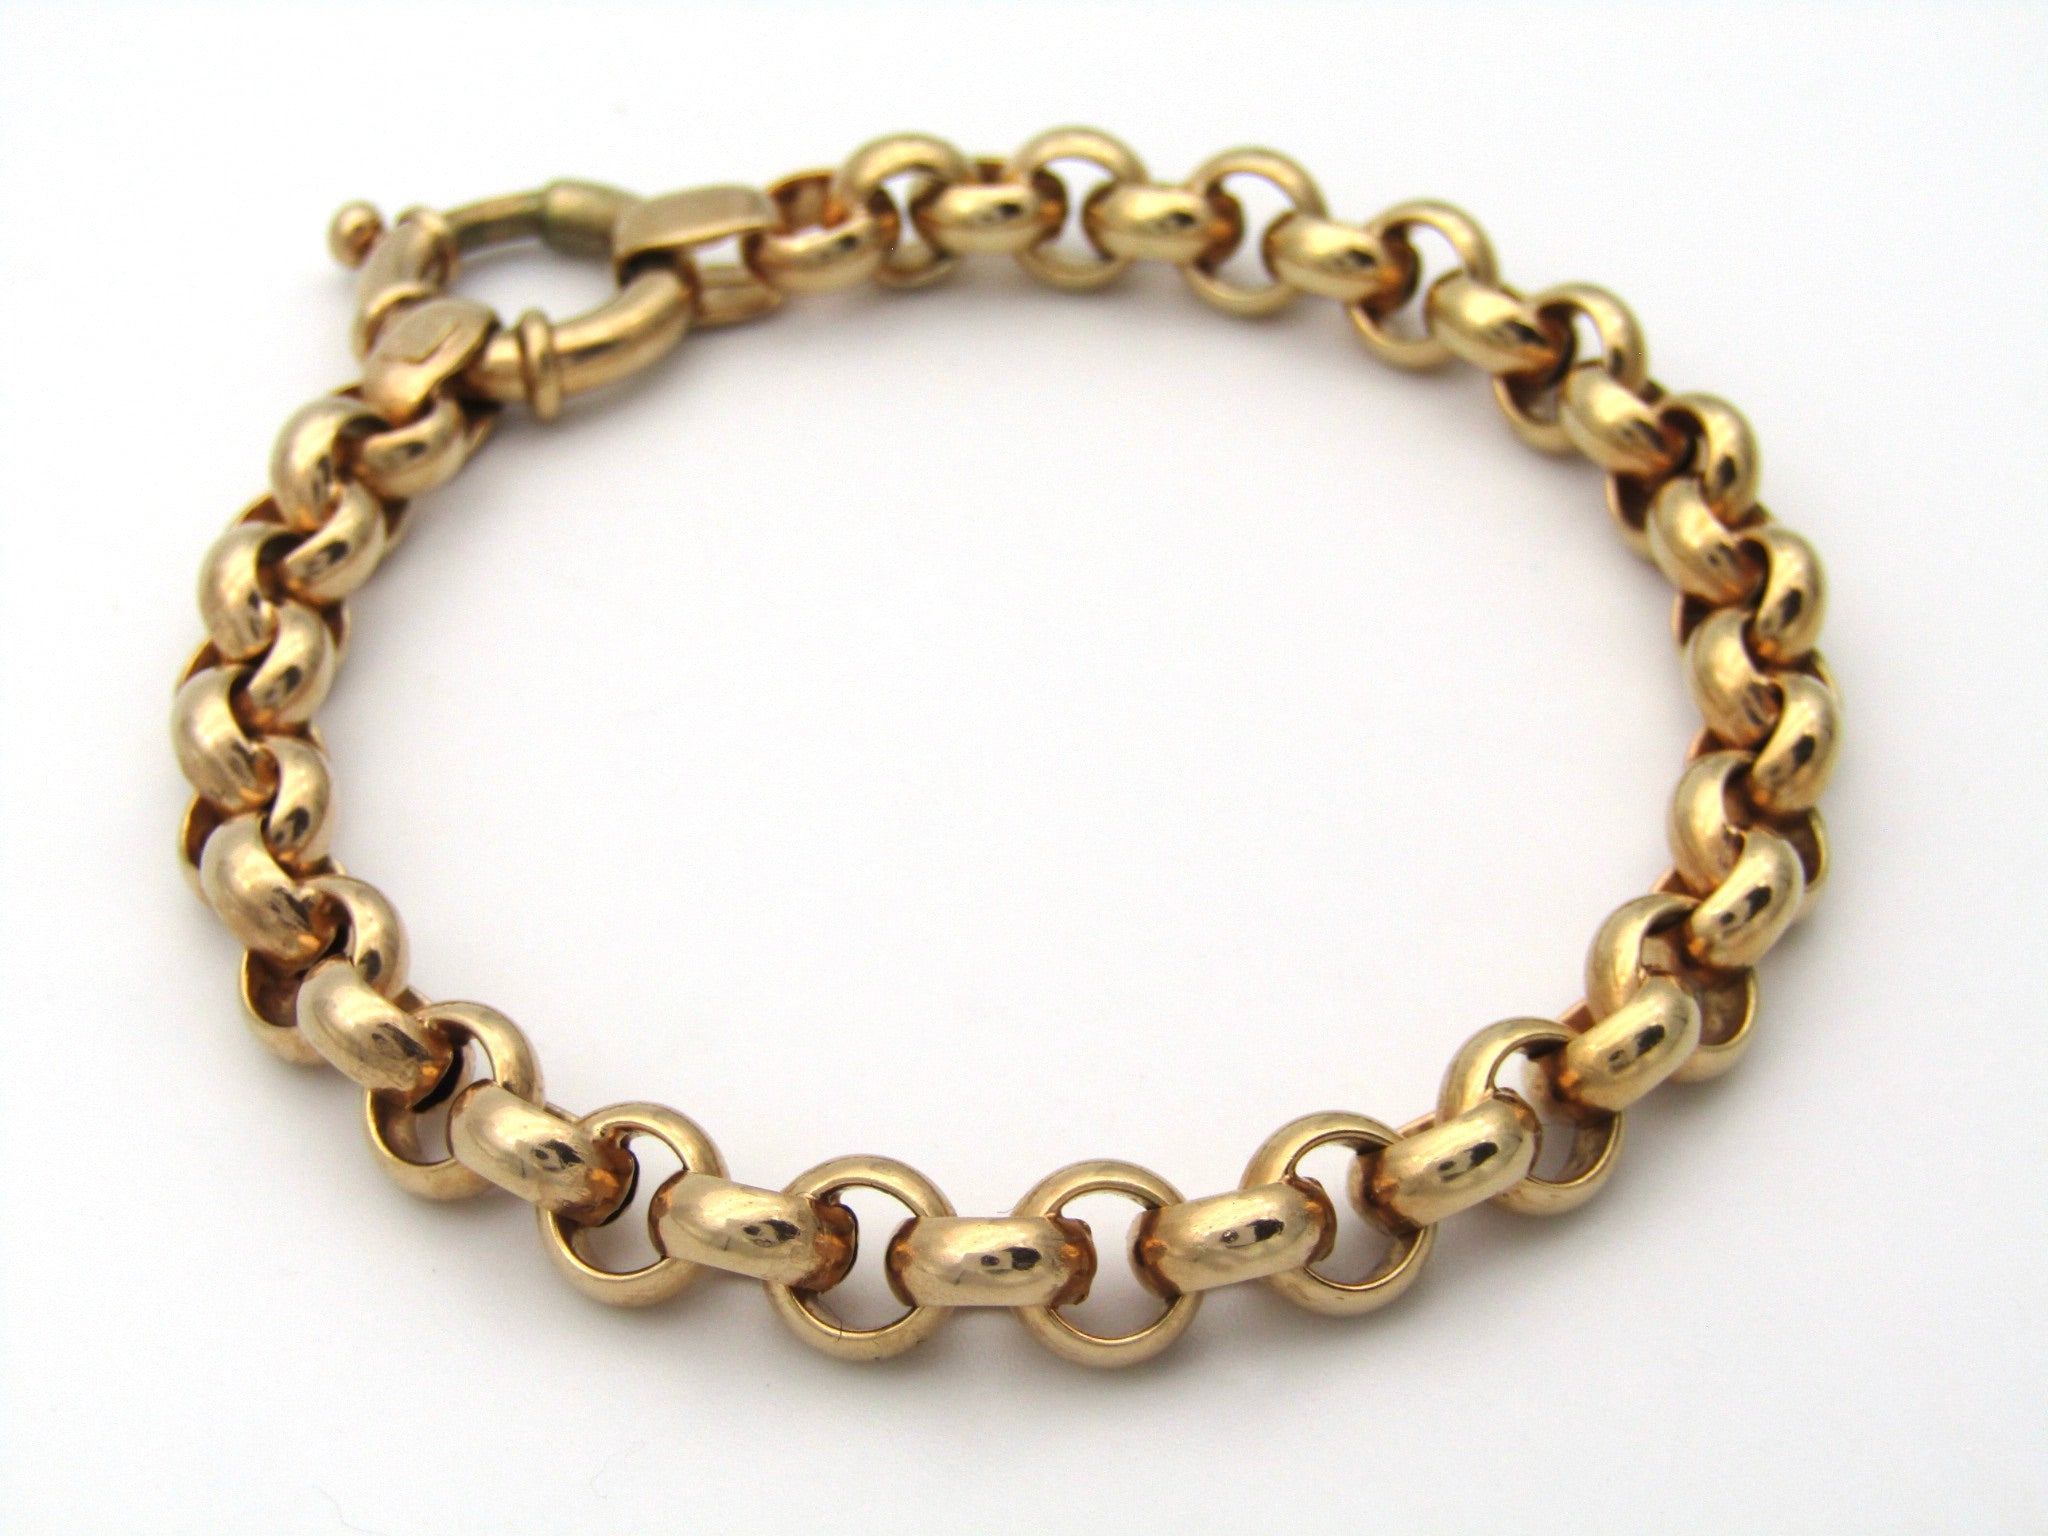 9K gold belcher/rolo link bracelet by UnoAerre.